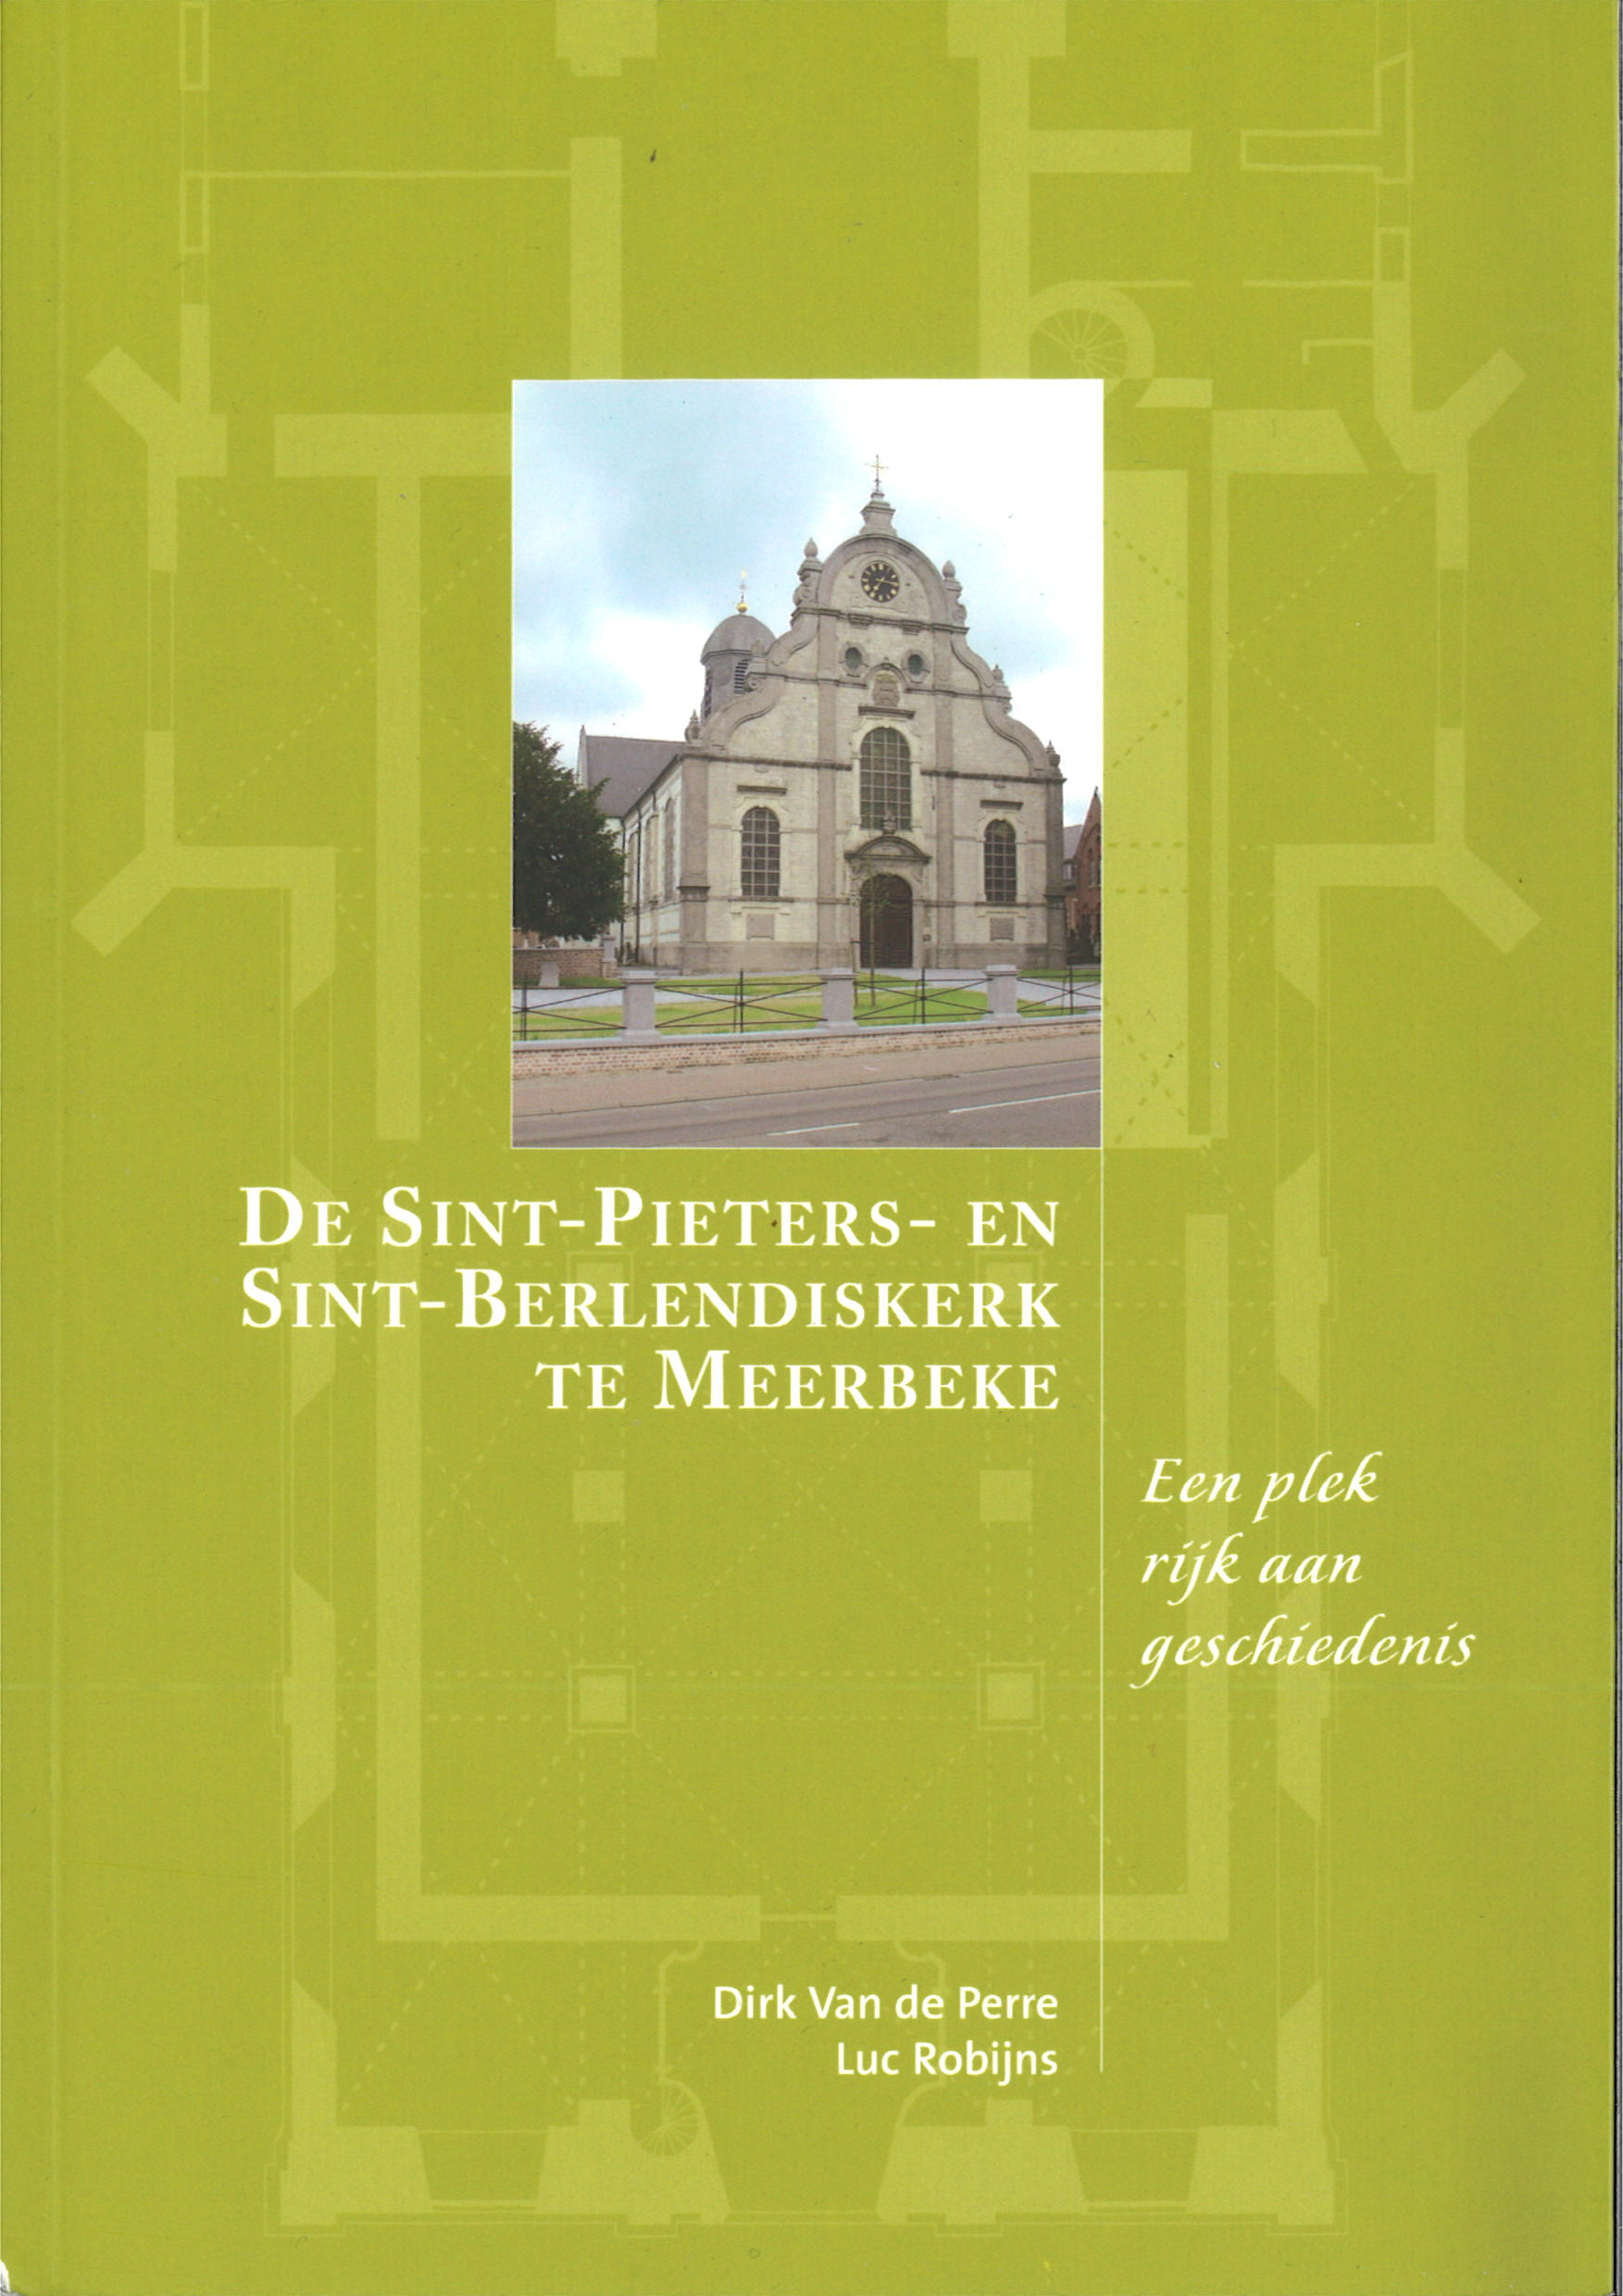 De Sint-Pieters- en Sint-Berlendiskerk te Meerbeke